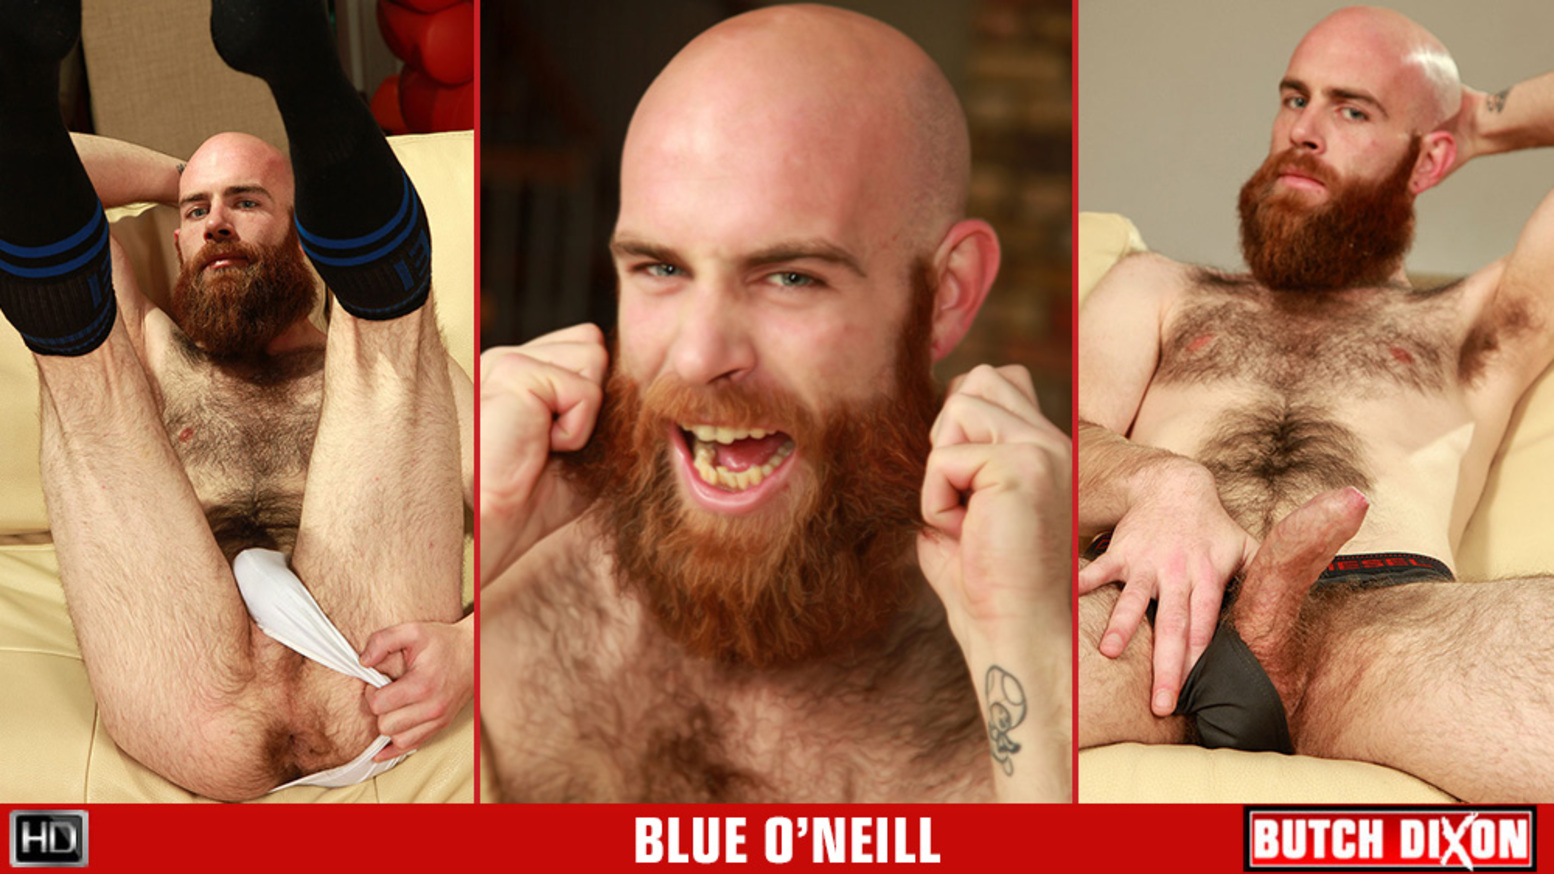 Blue O'Neill